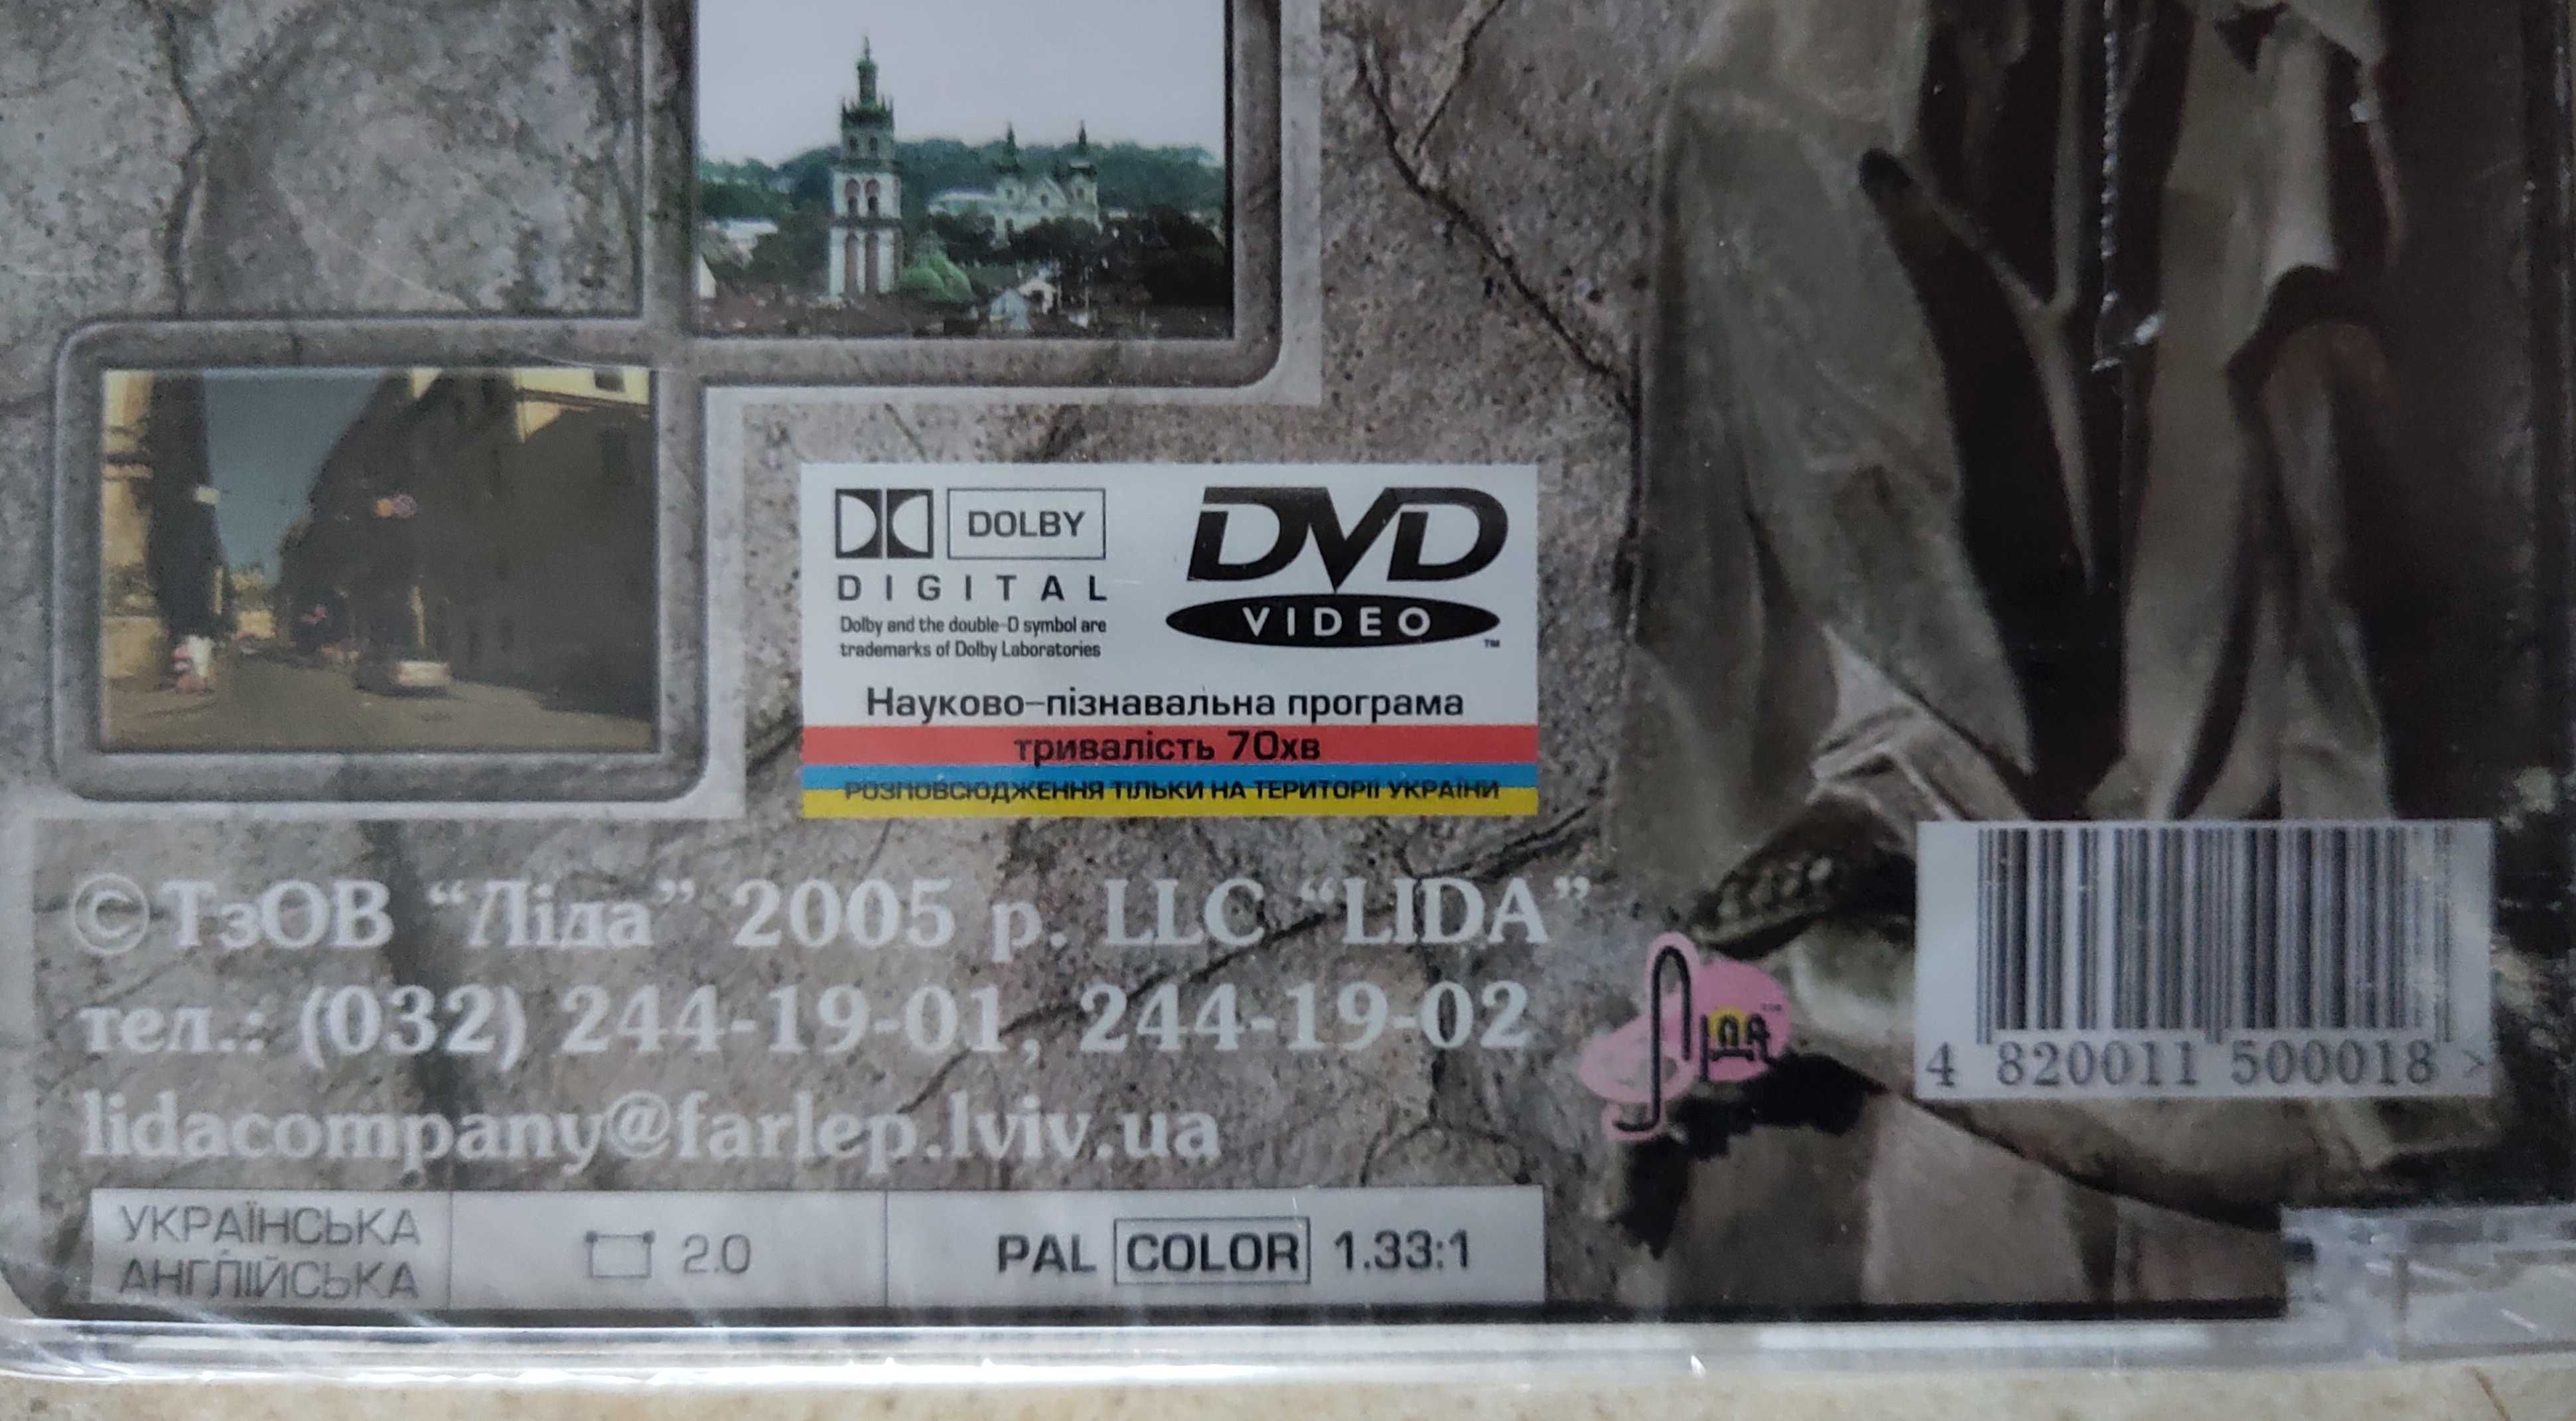 Невідомий Львів 2 DVD диска (абсолютно нові)